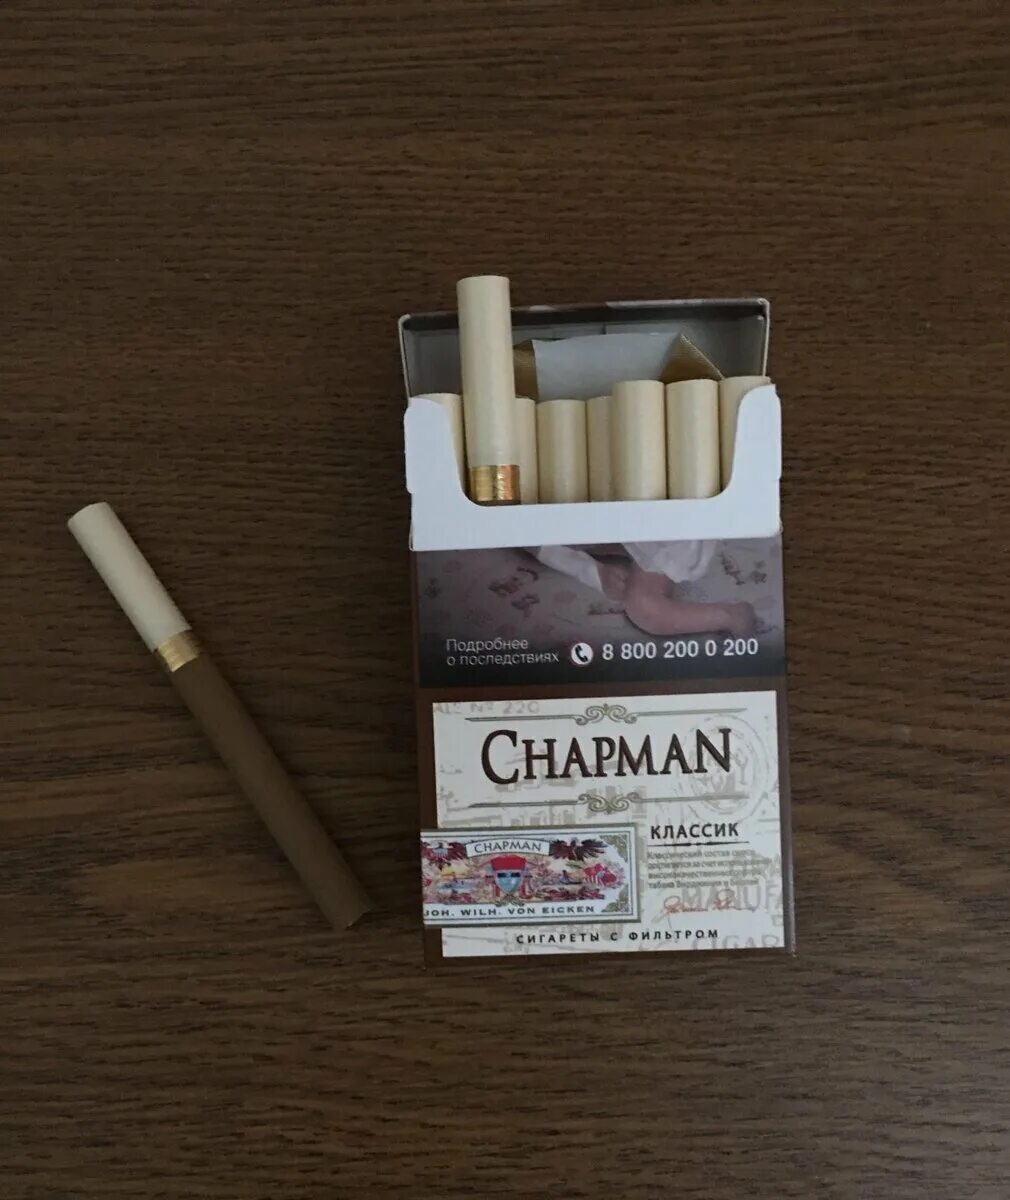 Ванильные сигареты. Сигареты Чапман Браун тонкие. Чапмен сигареты Классик. Chapman сигареты вкусы Браун. Чапман сигареты класси.